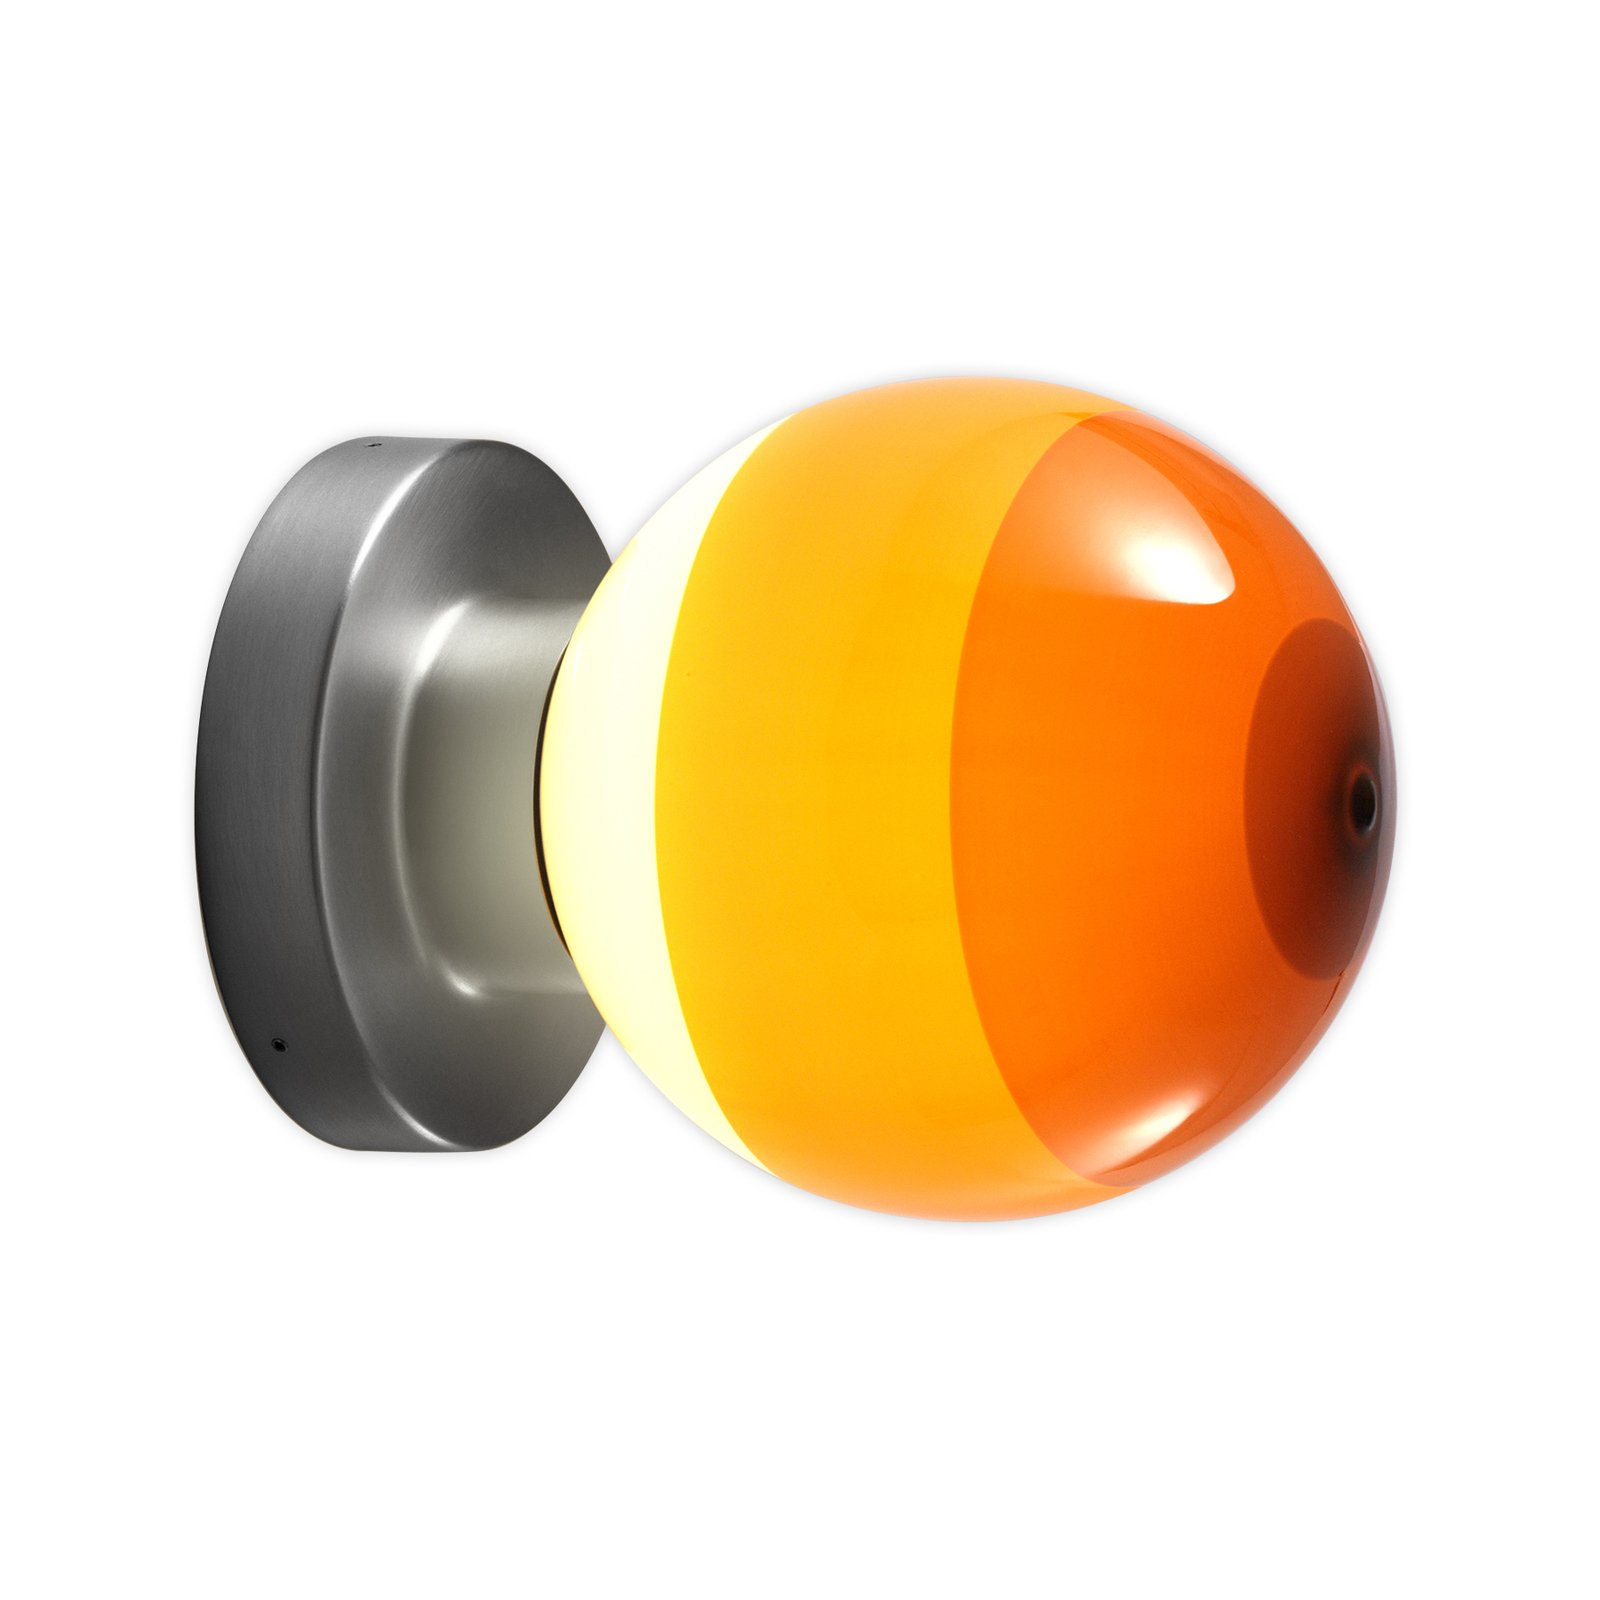 MARSET Dipping Light A2 LED-vägglampa orange/grå